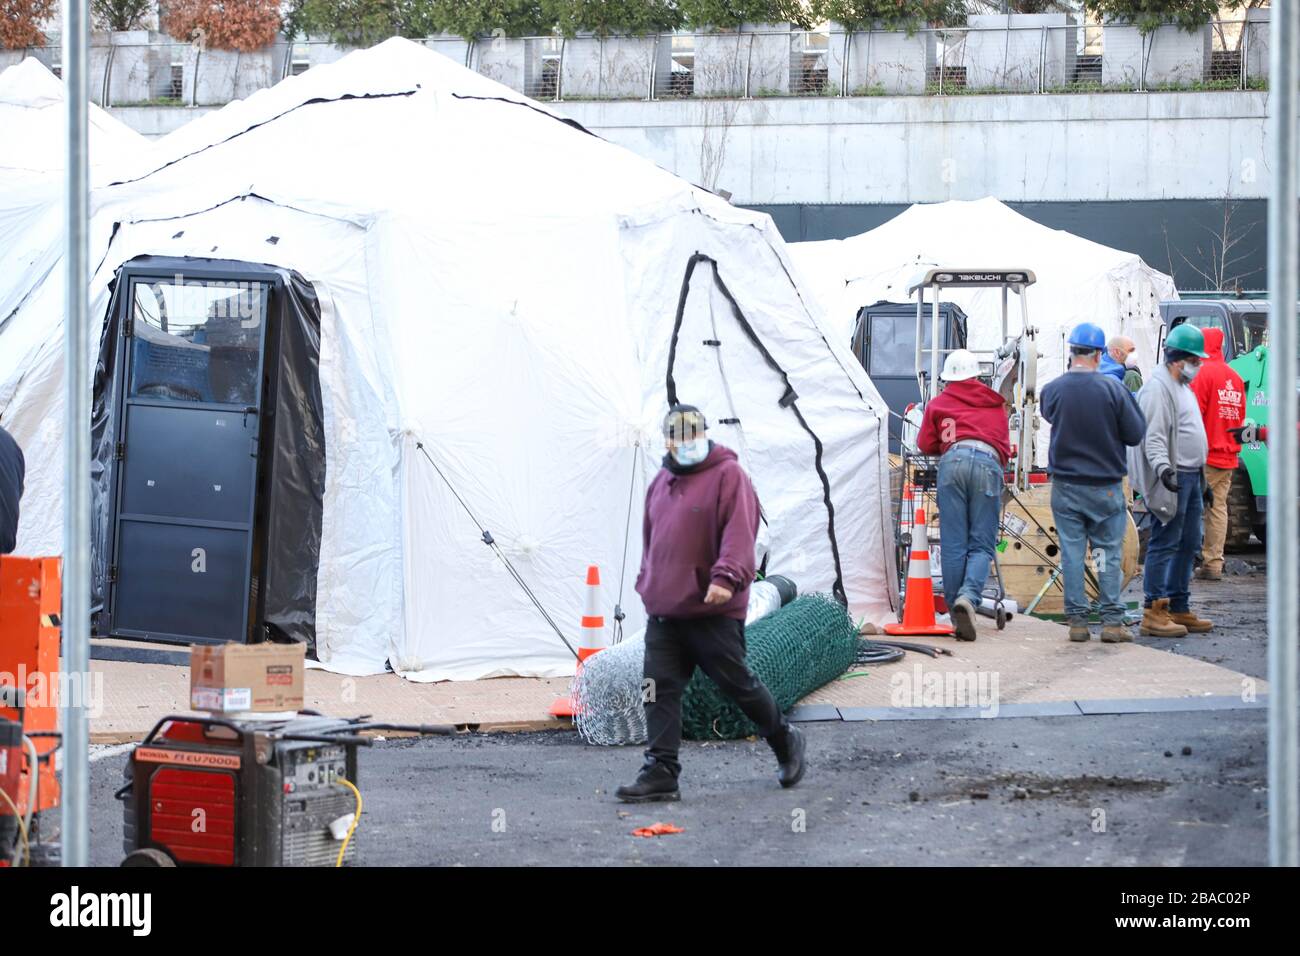 New York, New York, USA. März 2020. Riesige Zelte und große Kühlwagen wurden außerhalb des Bellevue Hospital in Manhattan eingerichtet, um Tausende von Leichen aufnehmen zu können, sollte das Coronavirus das Leichensystem der Stadt überlasten. Gutschrift: Vanessa Carvalho/ZUMA Wire/Alamy Live News Stockfoto